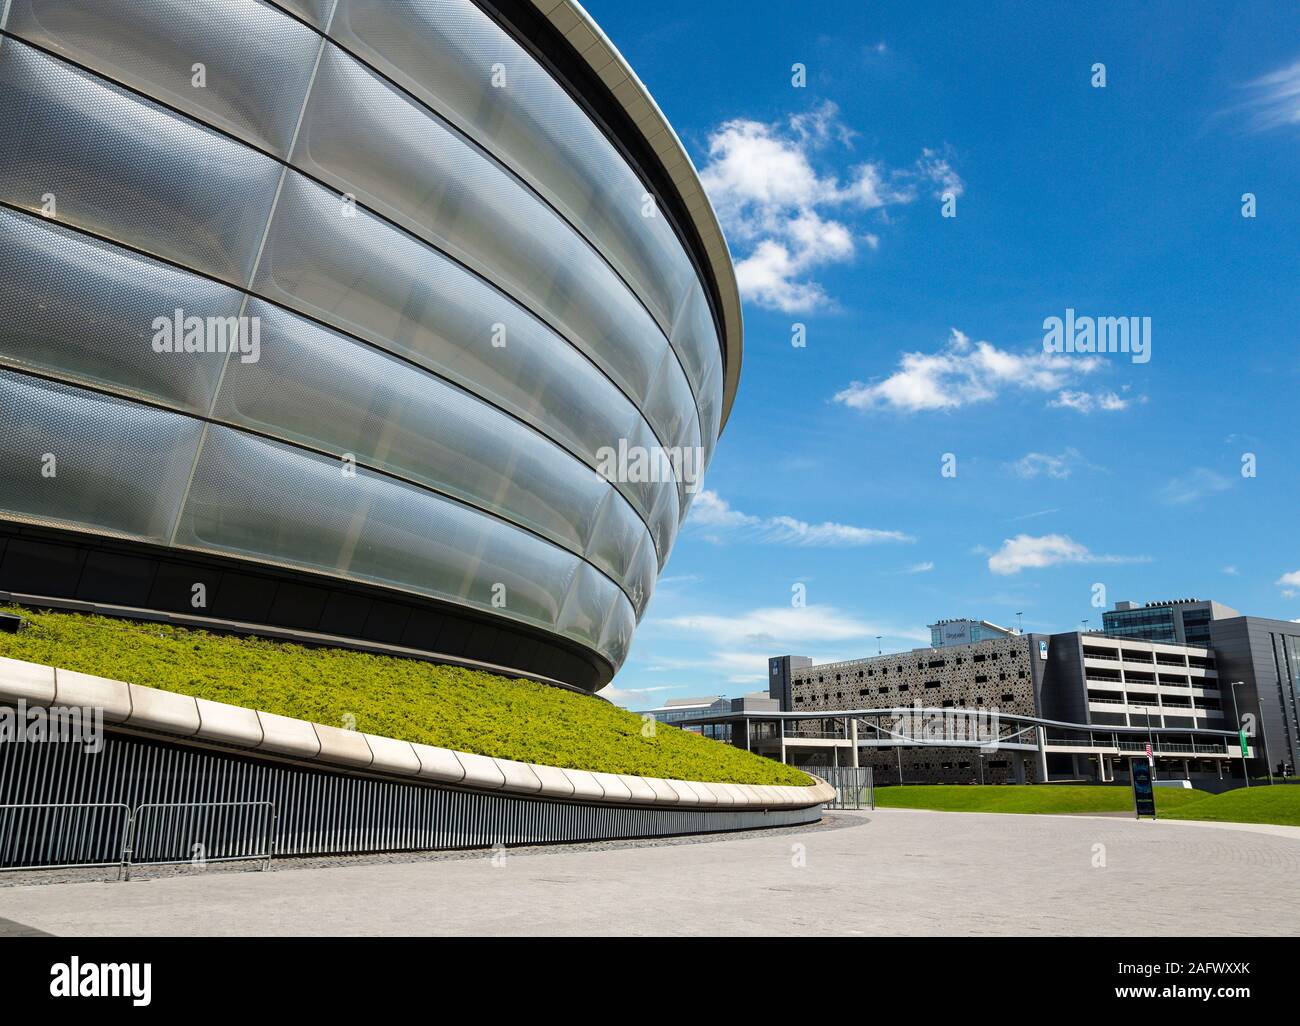 Dettaglio dei secc idro concert hall di Glasgow, Scozia Foto Stock